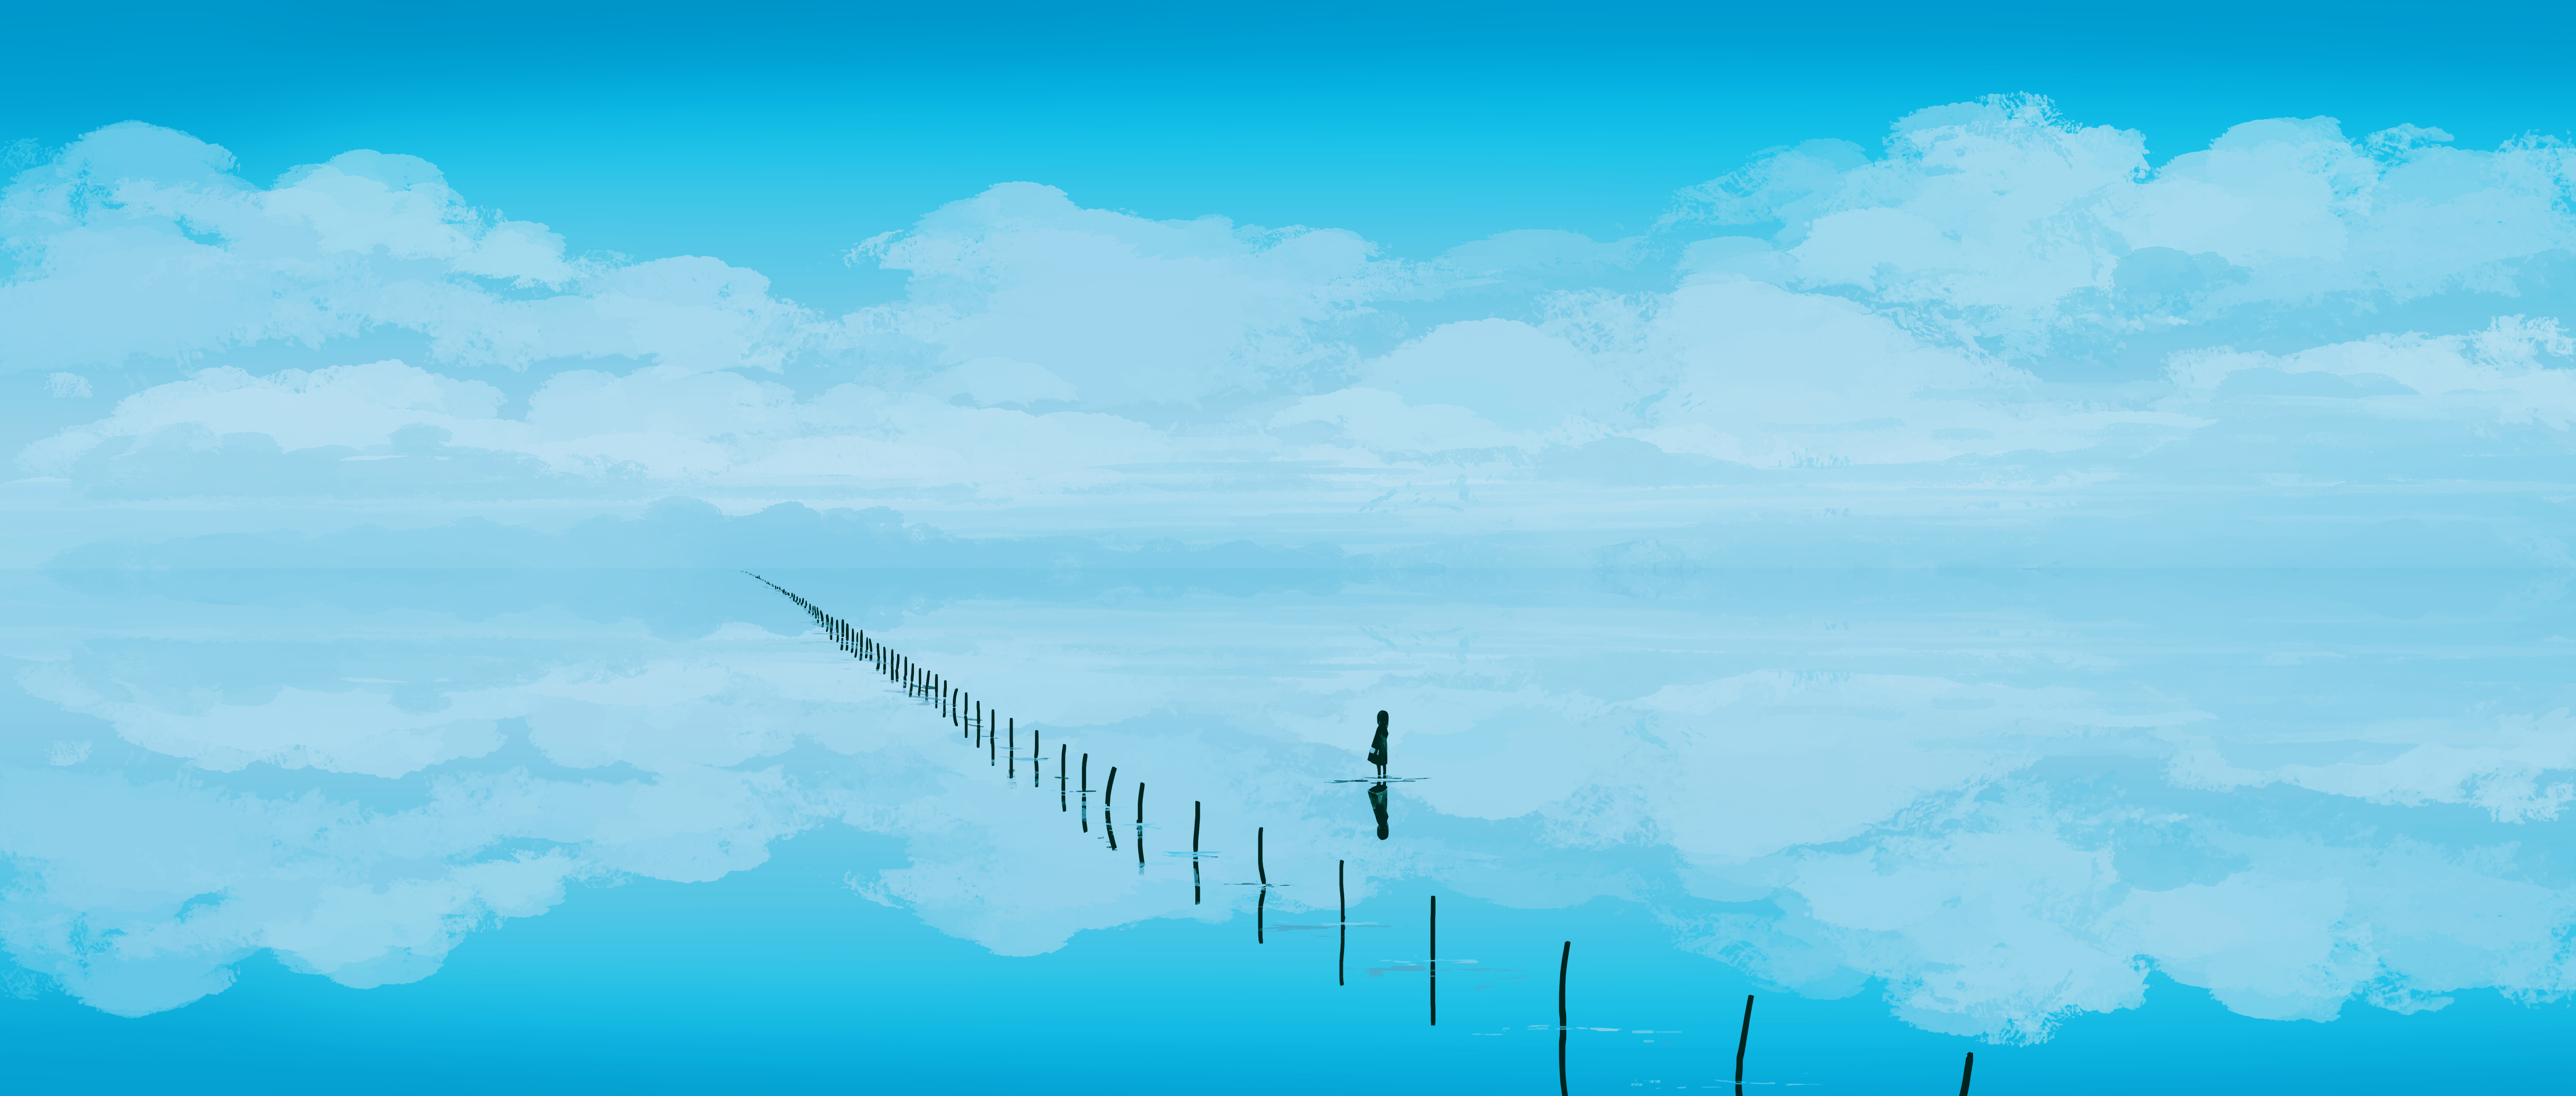 General 5640x2400 Gracile digital art artwork illustration landscape water clouds sky reflection nature standing